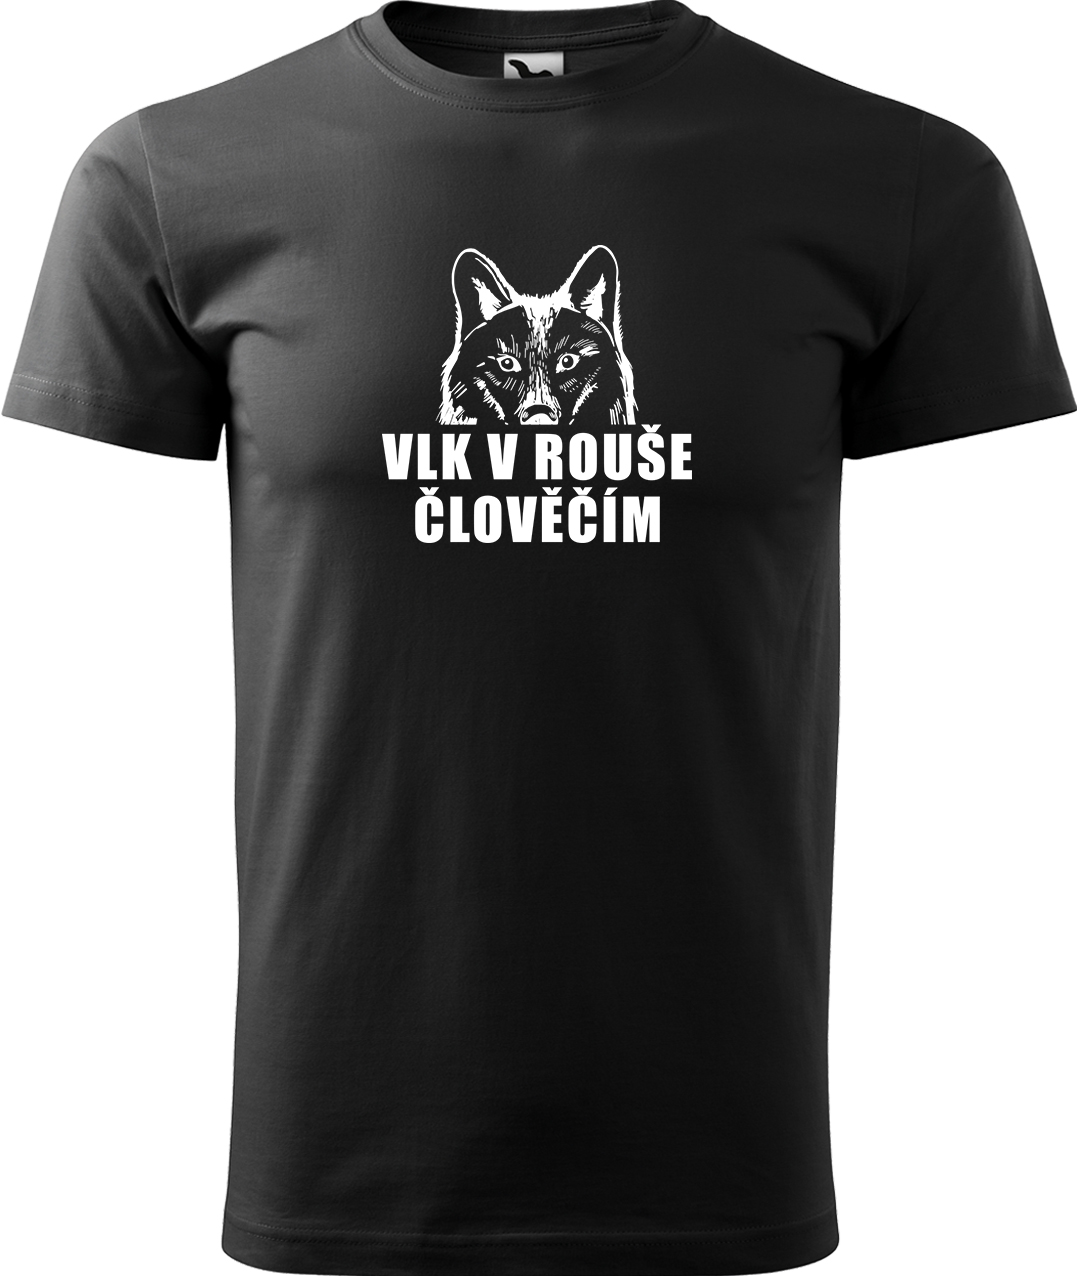 Pánské tričko s vlkem - Vlk v rouše člověčím Velikost: S, Barva: Černá (01), Střih: pánský